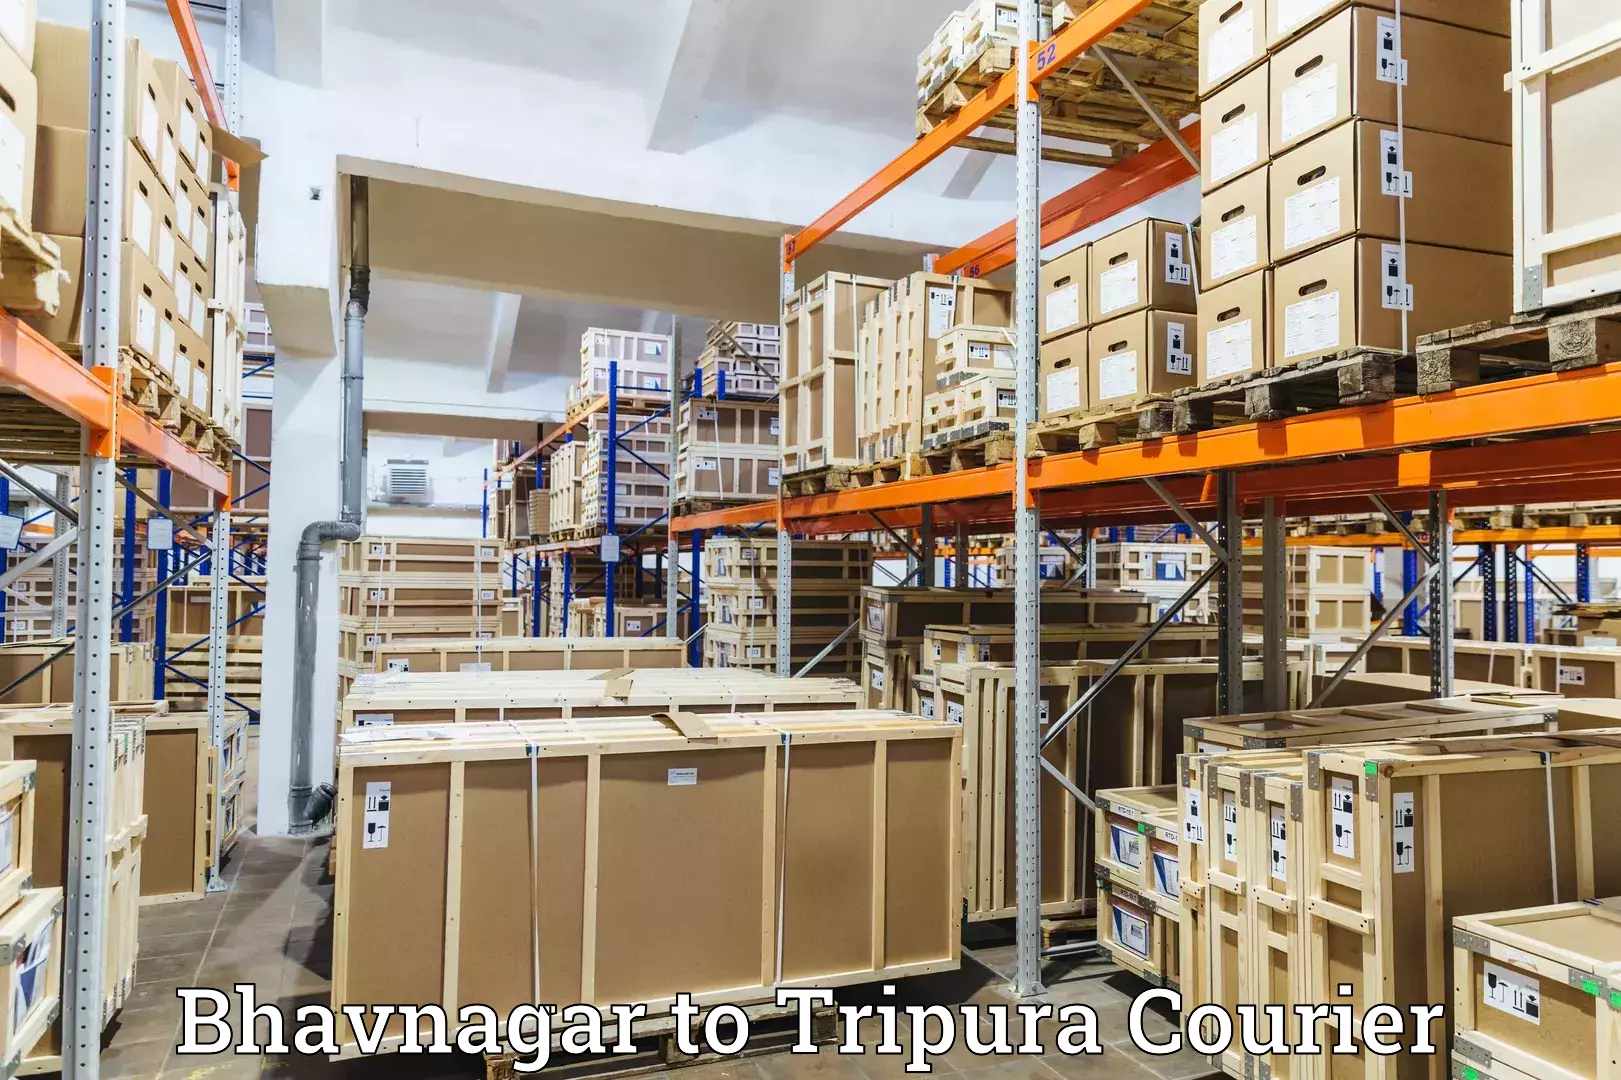 Advanced freight services Bhavnagar to Udaipur Tripura